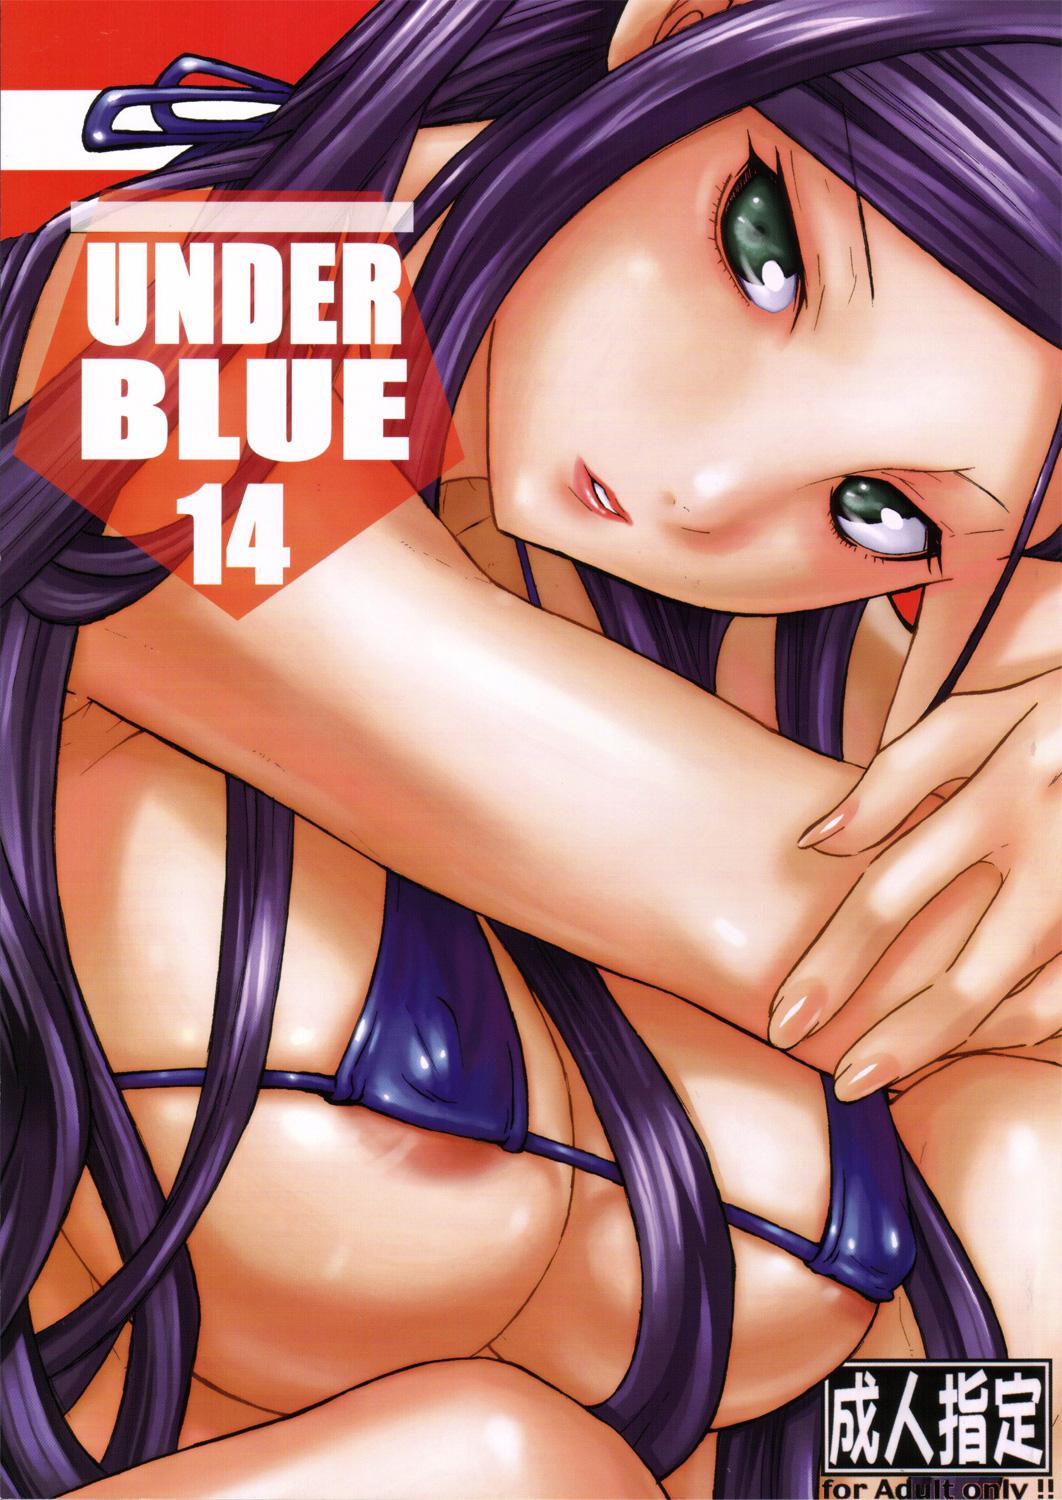 UNDER BLUE 14 0